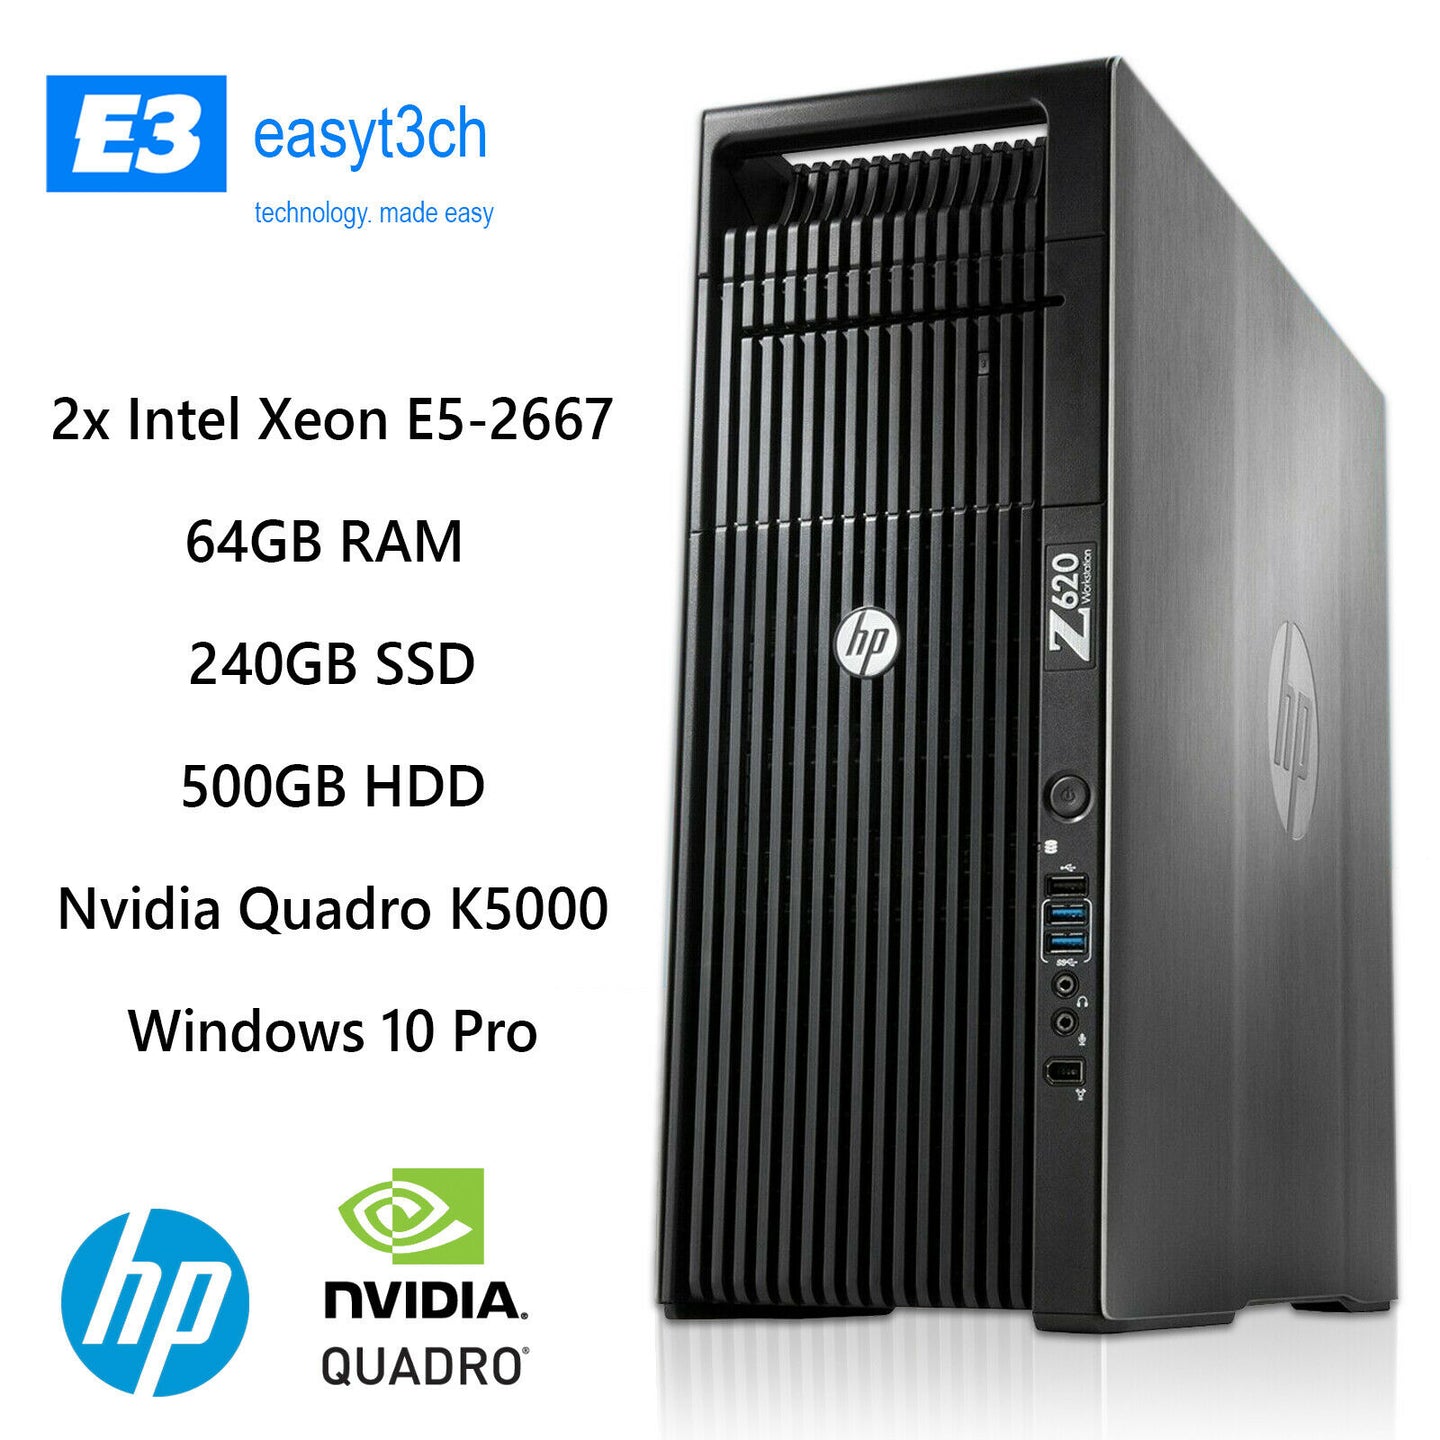 HP Z620 Workstation PC 2x 6 Core Xeon E5-2667 2.90GHz 64GB RAM 240GB SSD K5000